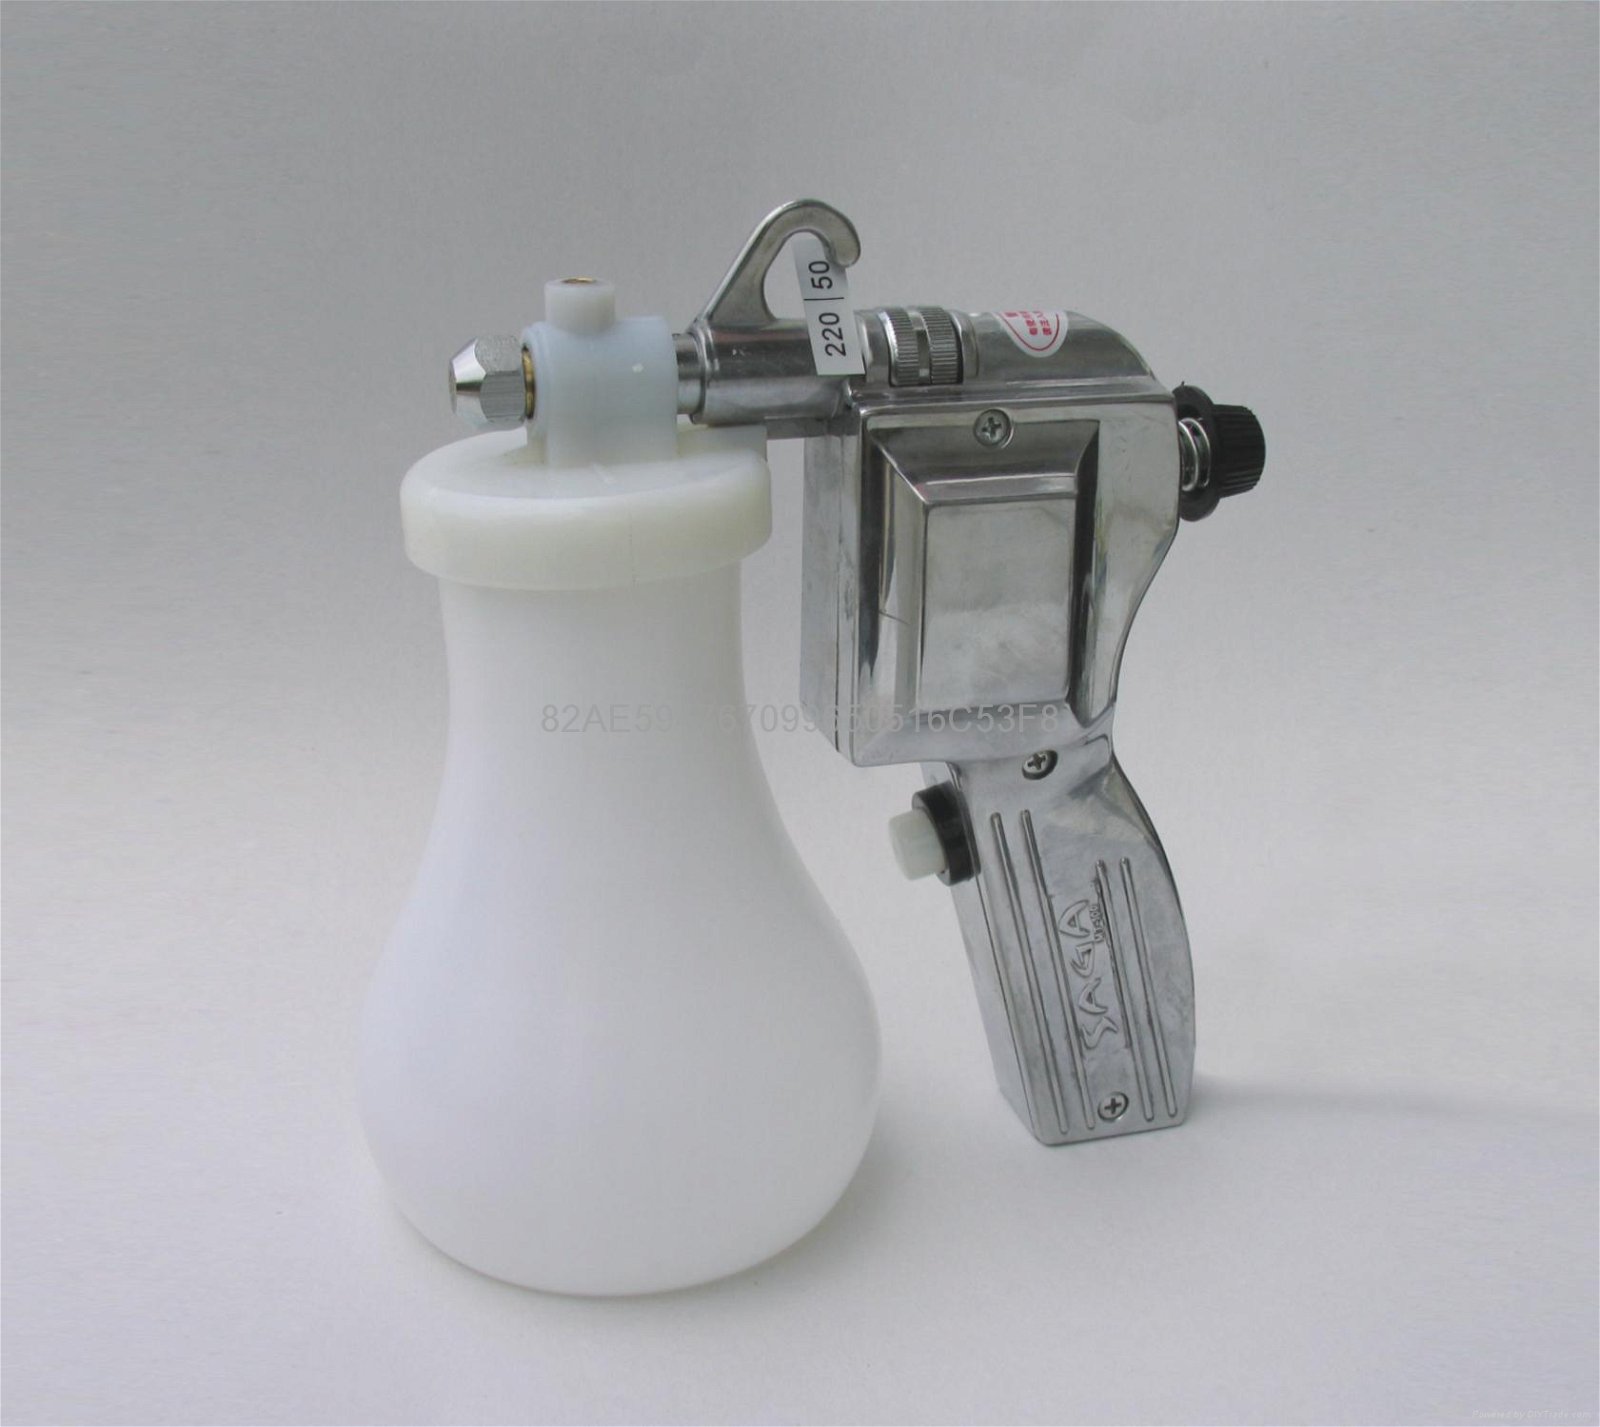 SAGA MT-100 Metal Textile Cleaning Spray Gun 